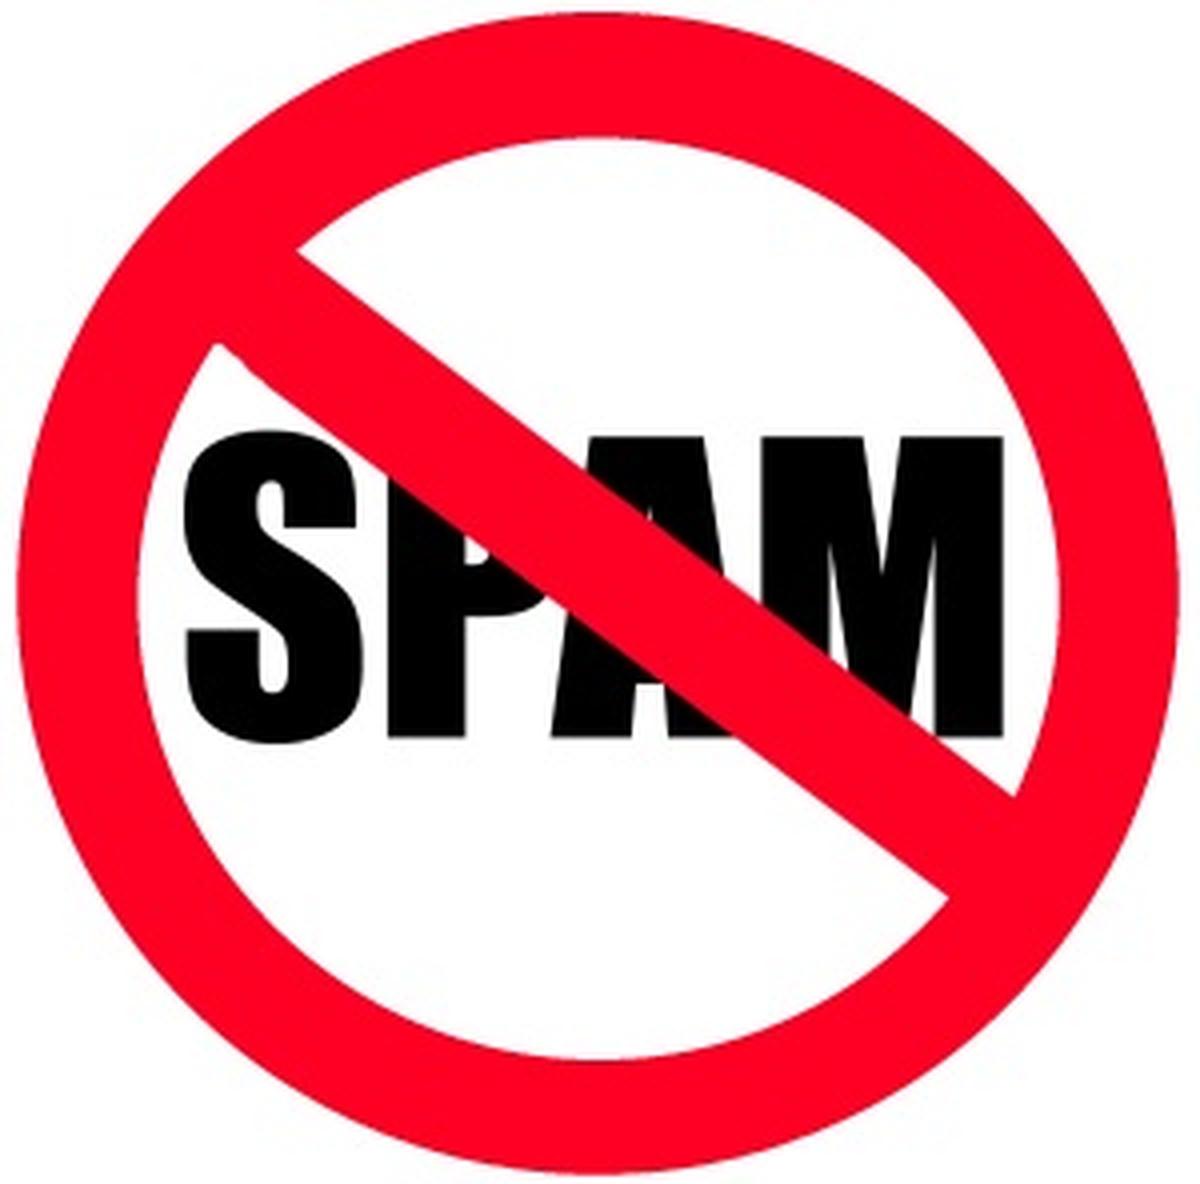 Prevent Spam On Social Network